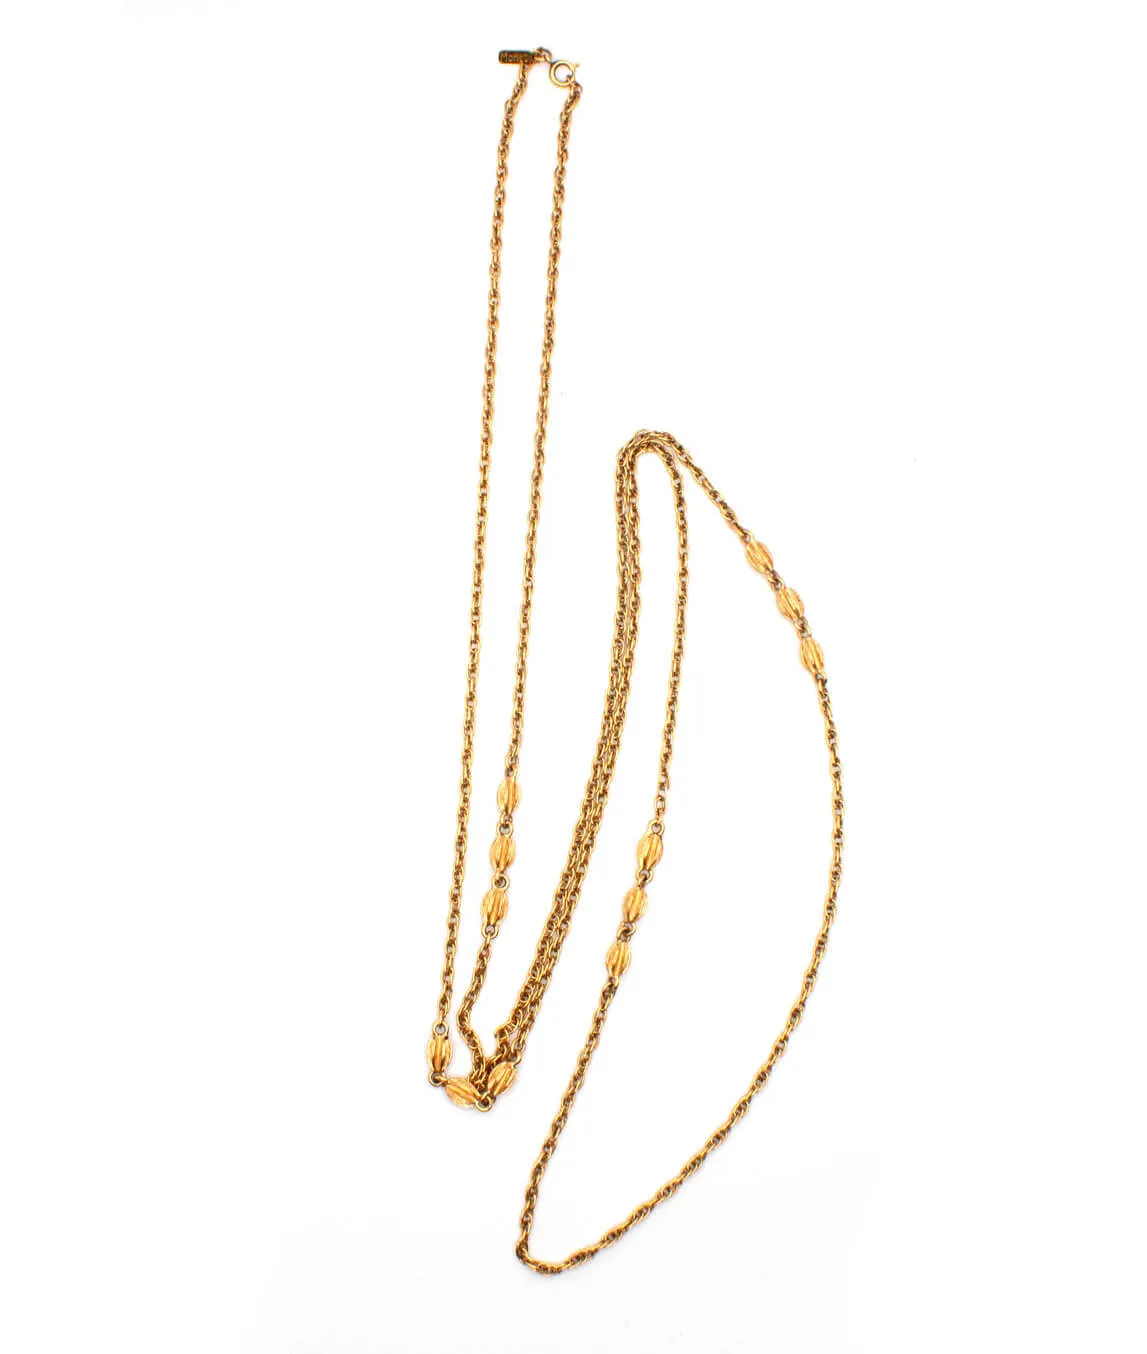 Vintage Monet gold tone long chain necklace